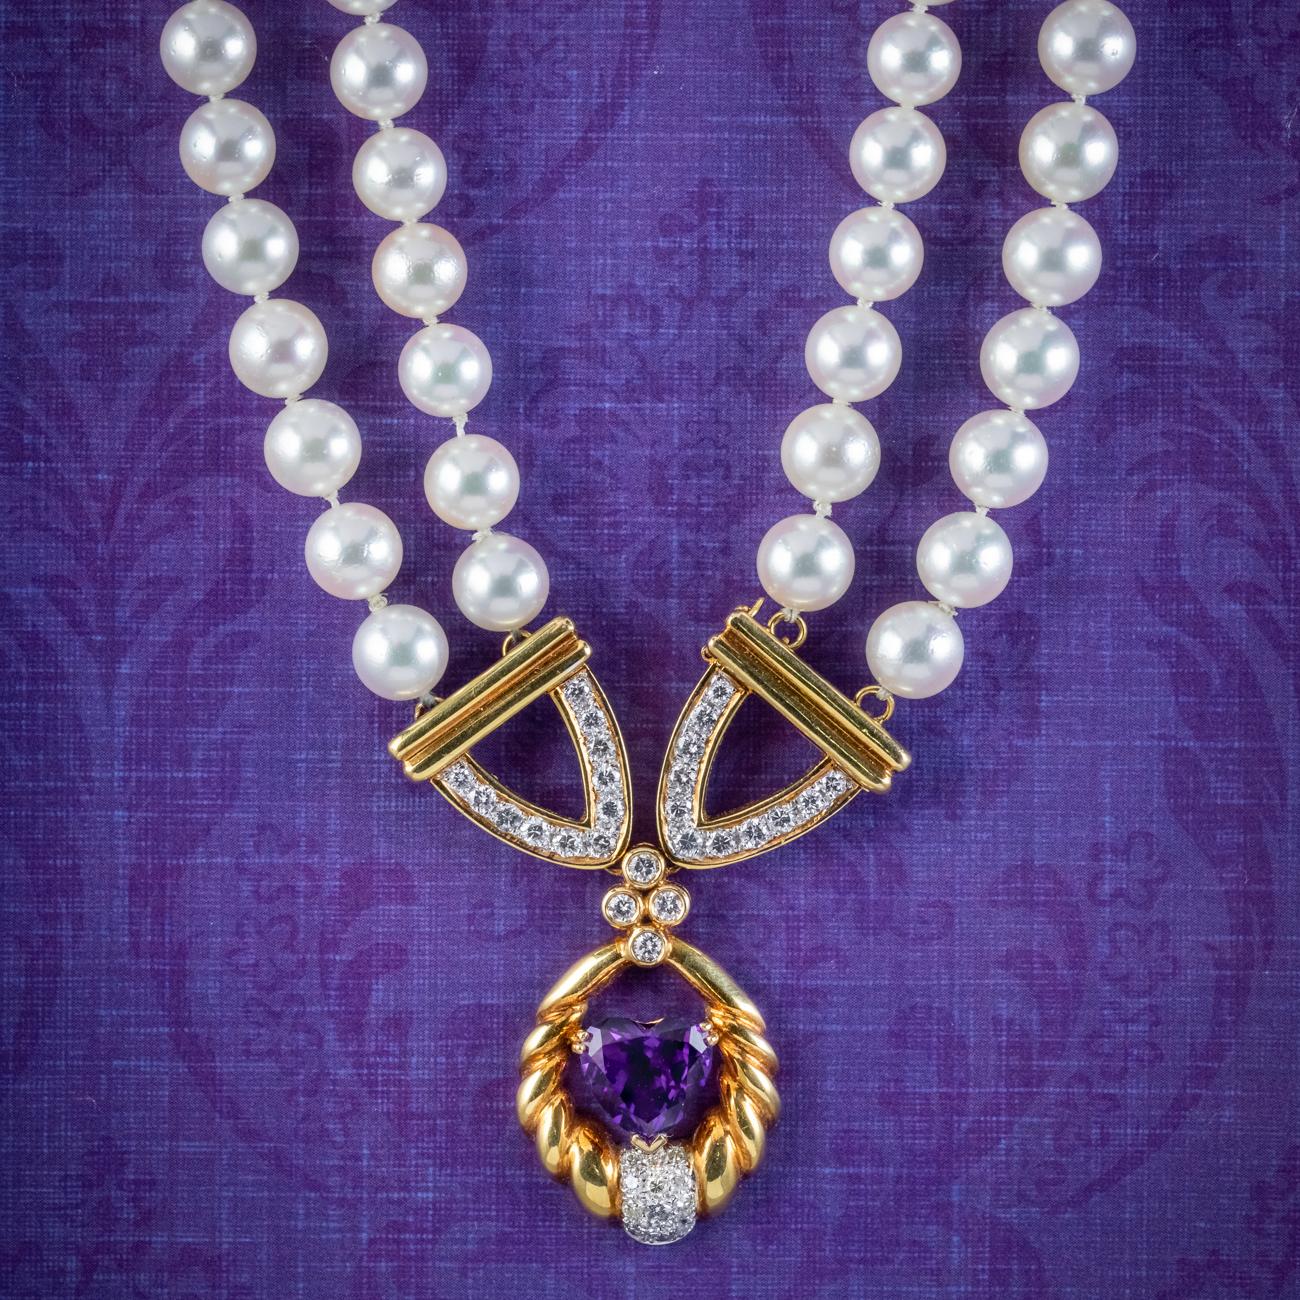 Magnifique collier lavallière en perles vintage datant du milieu du 20e siècle, avec deux rangs de perles blanches lustrées menant à un fabuleux compte-gouttes en or 18ct bordé de diamants taille brillant pavés (environ 1,60ct au total) et d'un cœur